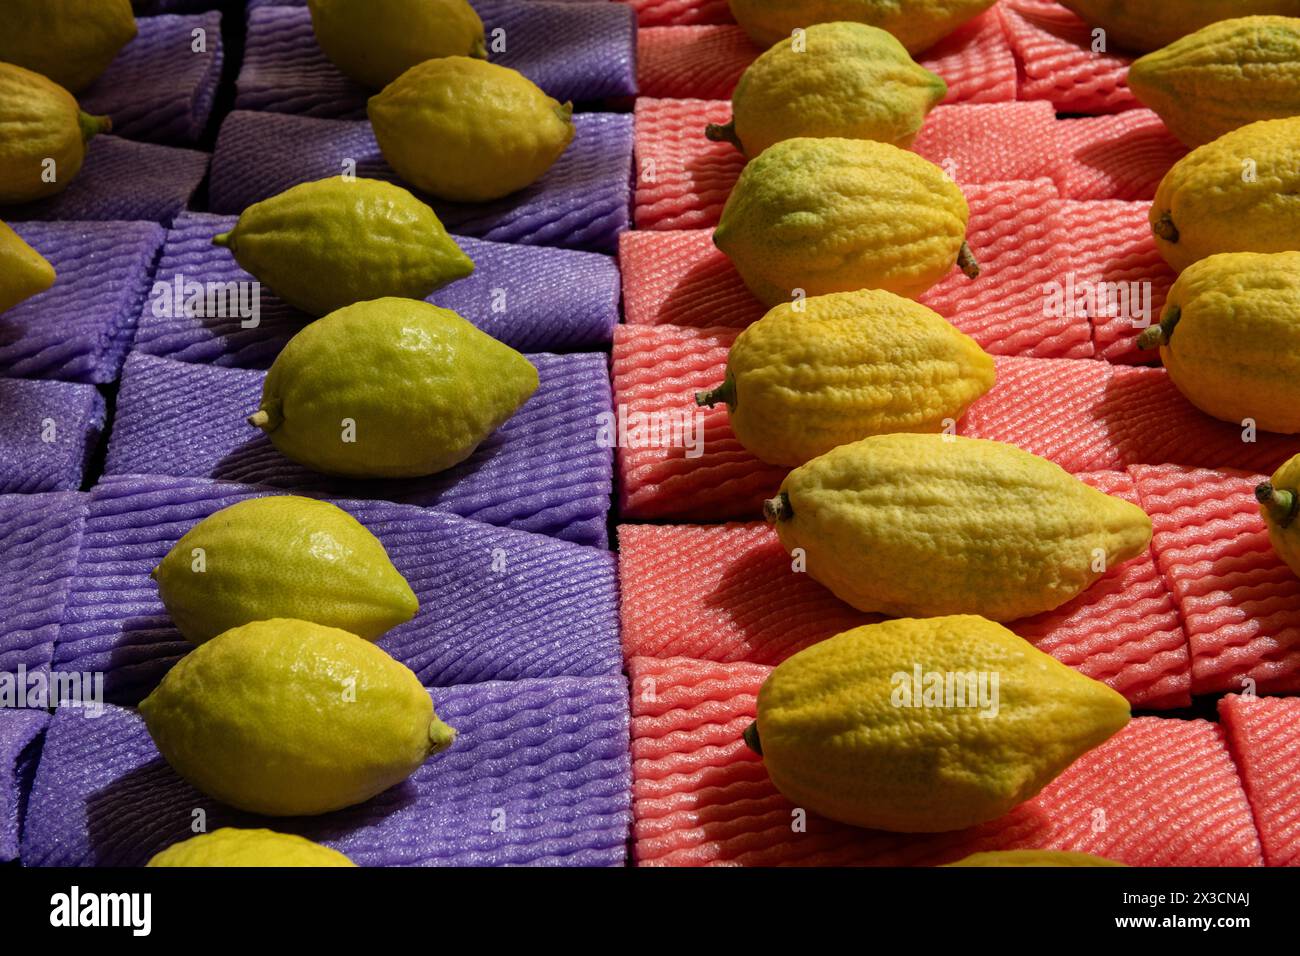 Etrogs ou fruits de citron, l'une des quatre espèces de plantes utilisées dans l'observance rituelle de la fête juive de Sukkot, étant vendu dans un Jerusal spécial Banque D'Images